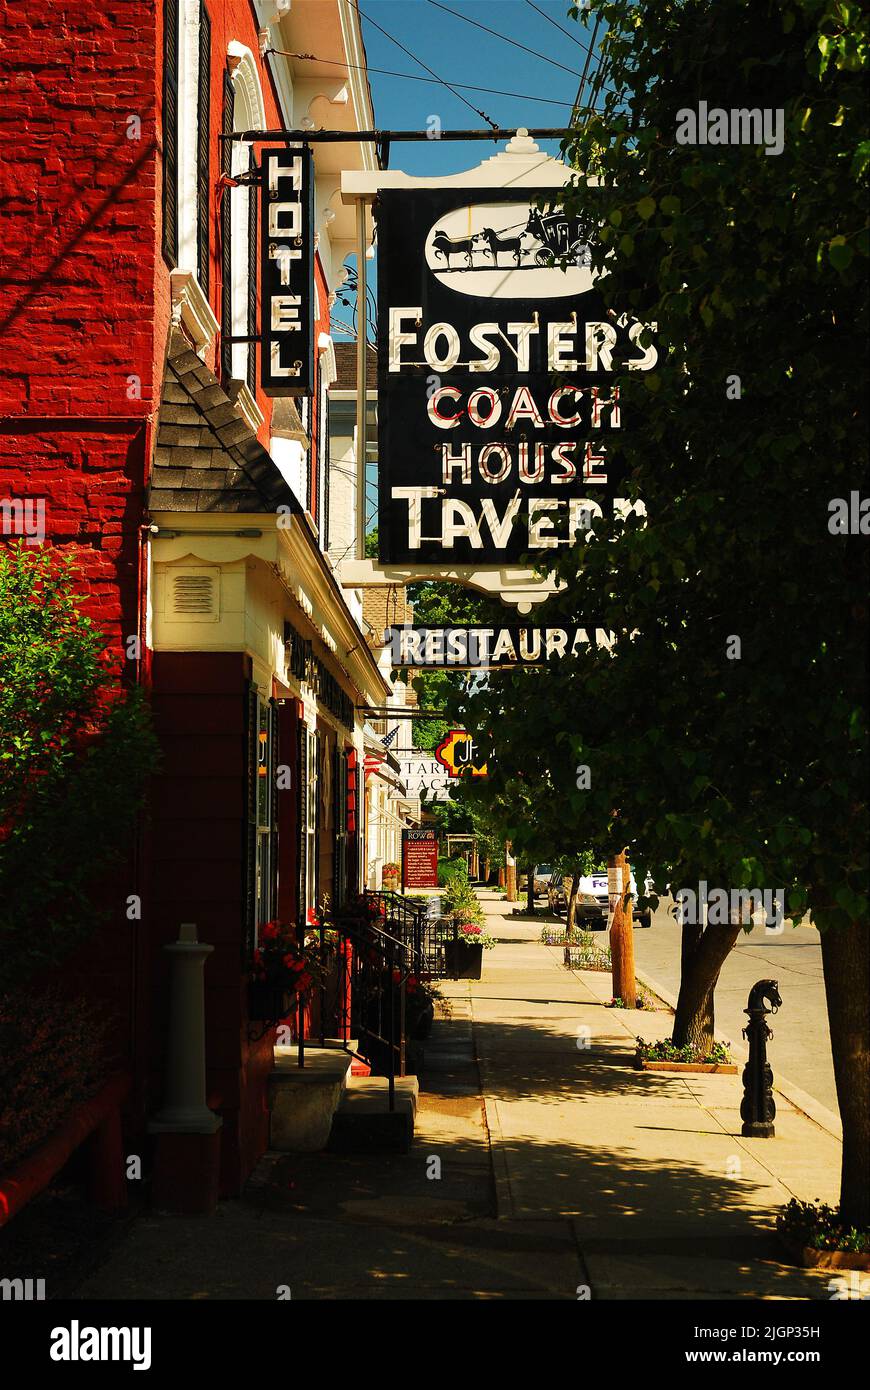 La histórica taberna Fosters Coach House es un restaurante histórico en el centro de Rhinebeck, Nueva York, en el Valle Hudson Foto de stock